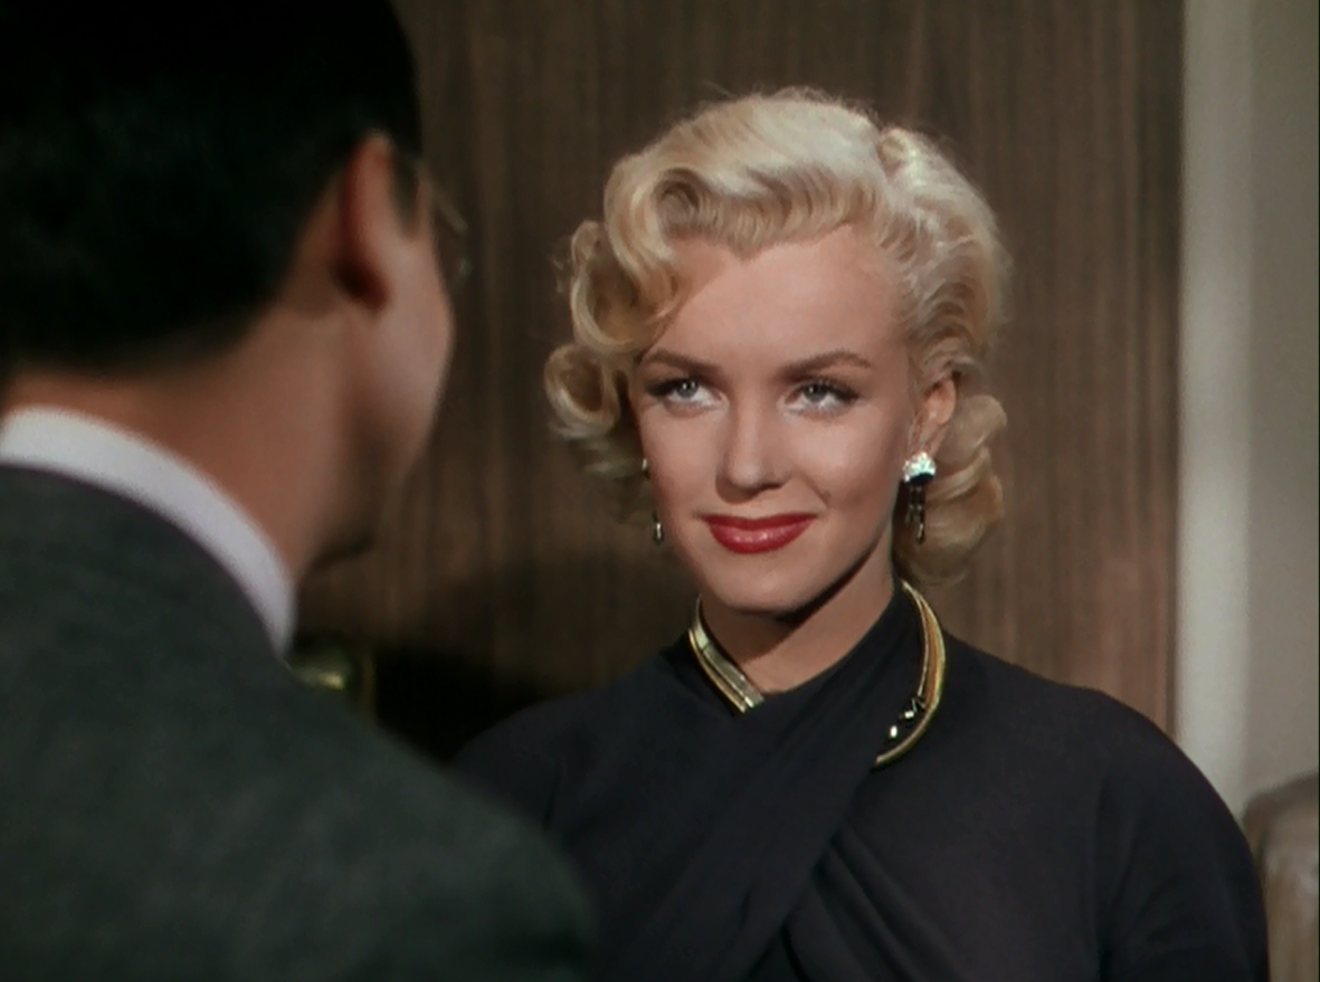 Still from the film Gentlemen Prefer Blondes.